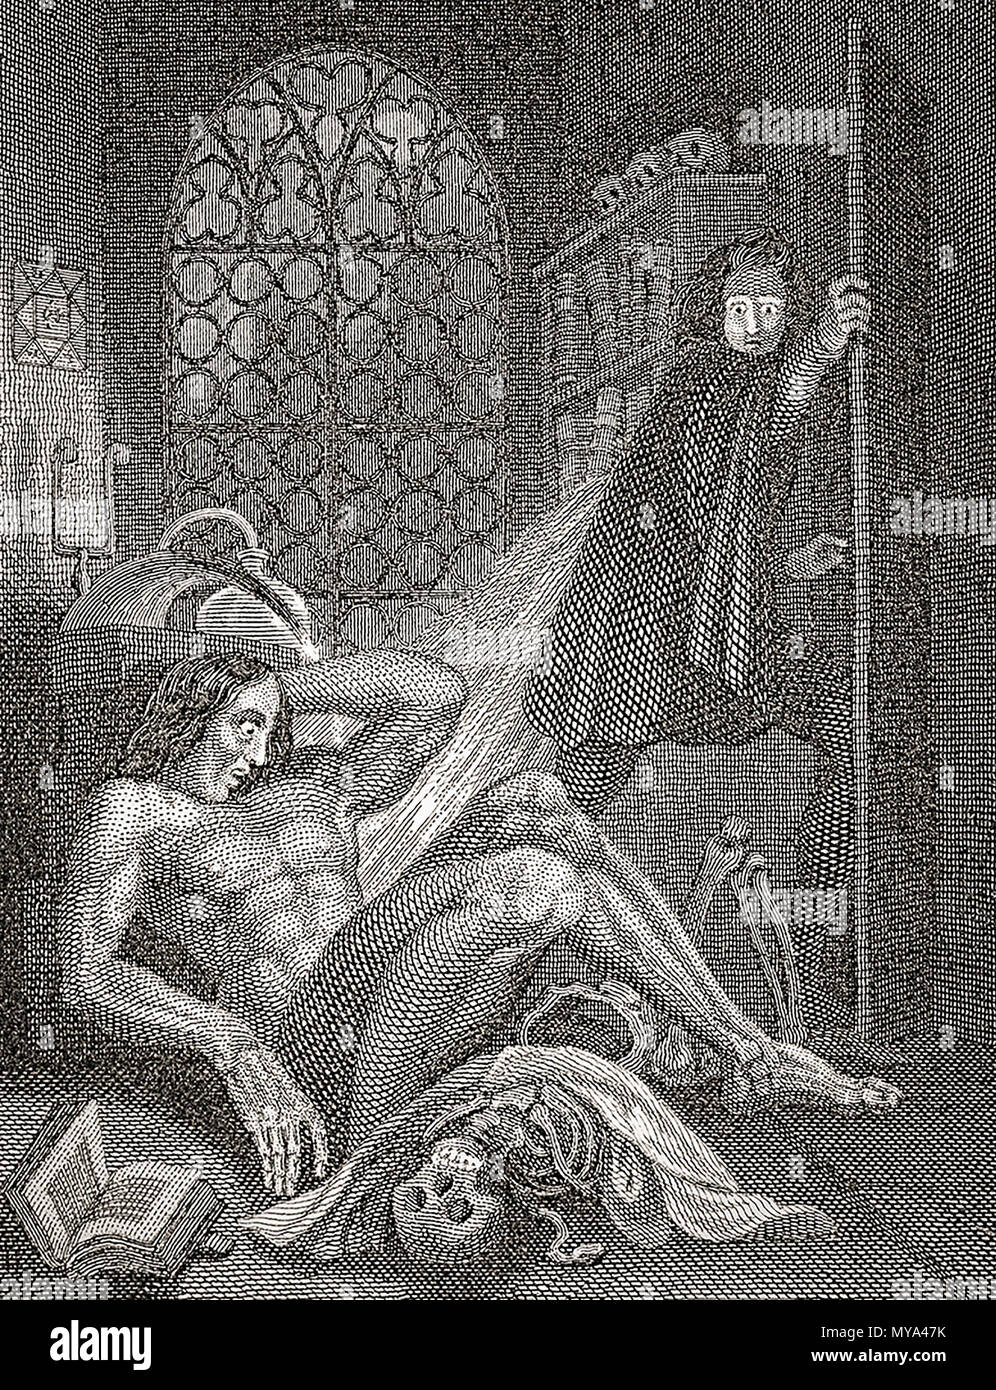 Victor Frankenstein e la sua creatura. Frontespizio da Theodor von Holst al 1831 edizione di Mary Shelley del romanzo Frankenstein o il moderno Prometeo. Mary Shelley, 1797-1851. Foto Stock